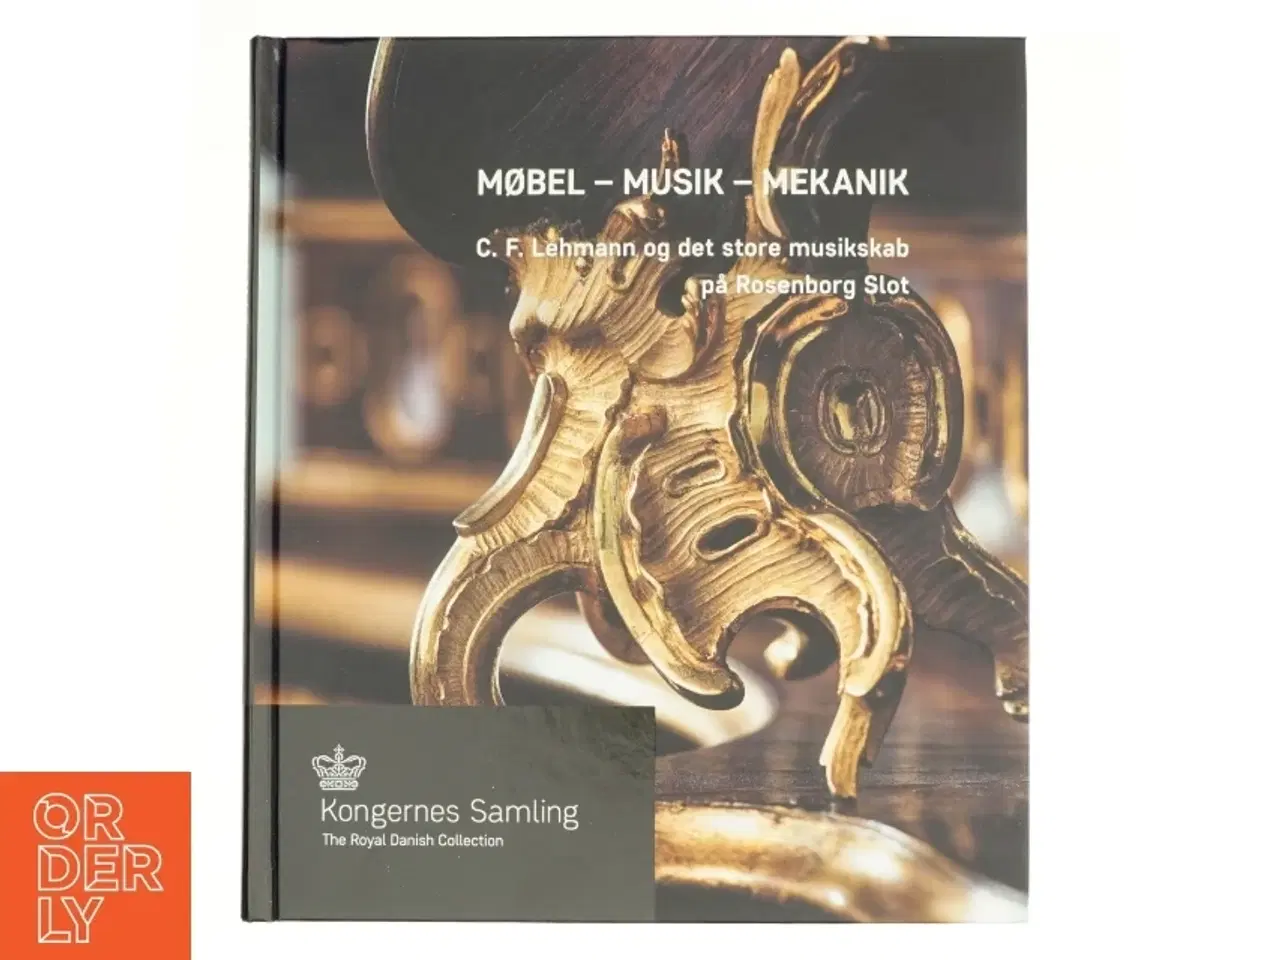 Billede 1 - Møbel-musik-mekanik fra Kongernes Samling